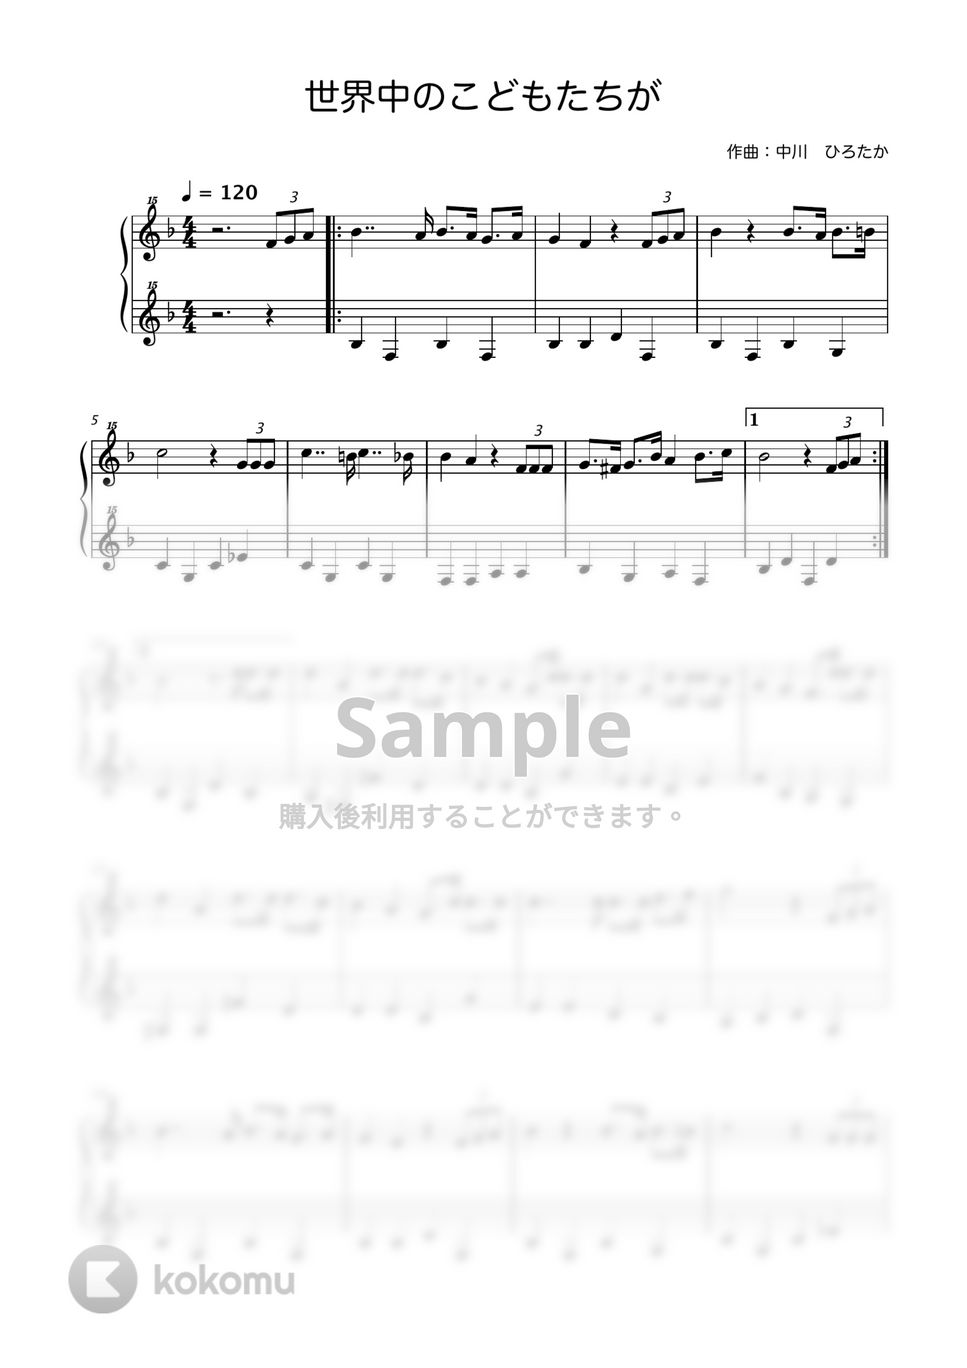 世界中のこどもたちが (トイピアノ / 25鍵盤) by Miyuh Kawanishi